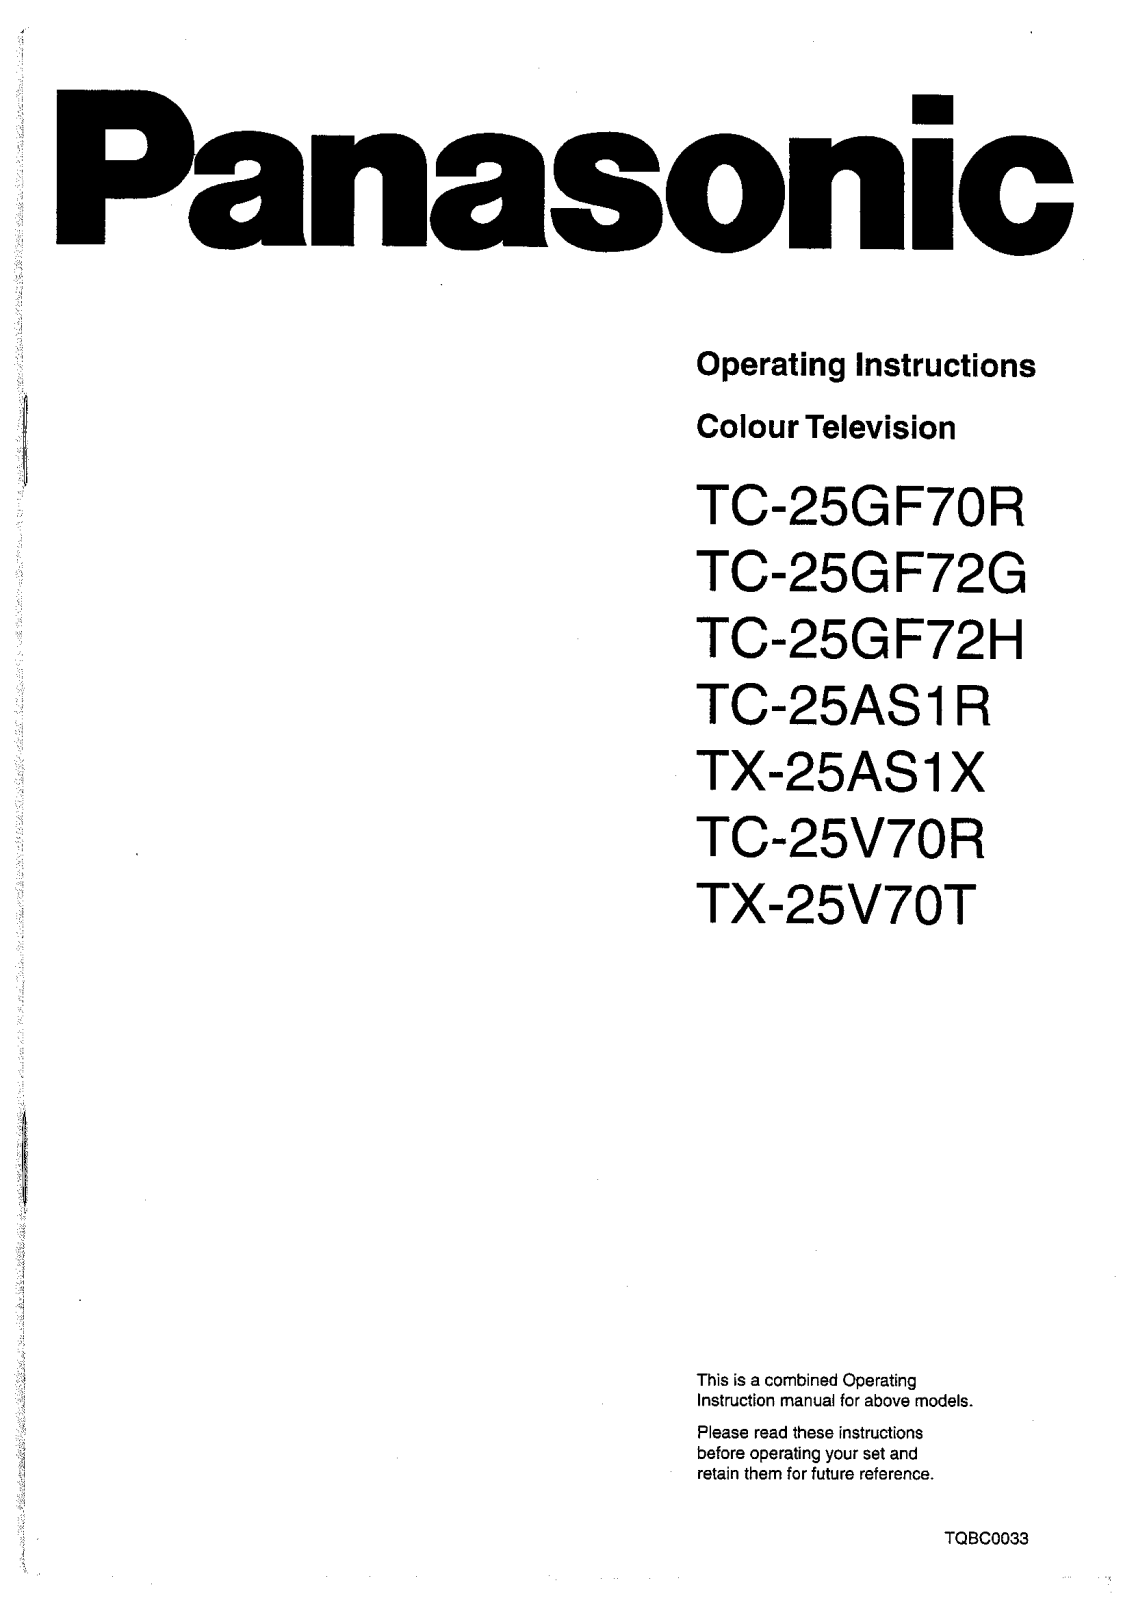 Panasonic TX-25AS1X, TC-25GF70R, TC-25GF72G, TC-25V70T, TC-25V70R User Manual